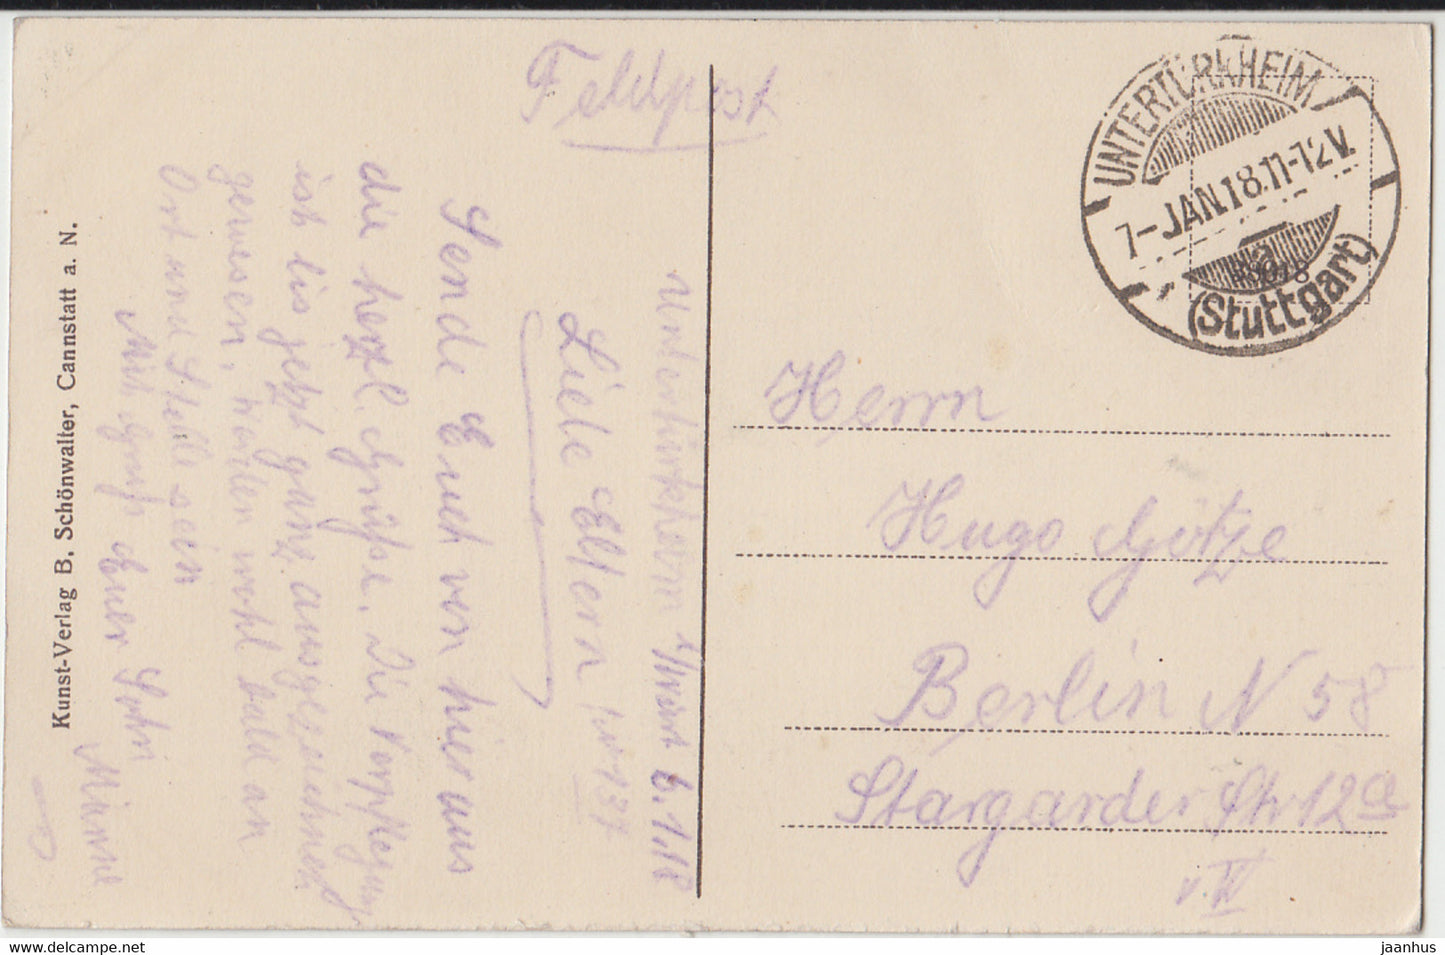 Untertürkheim - Feldpost - alte Postkarte - 1918 - Deutschland - gebraucht